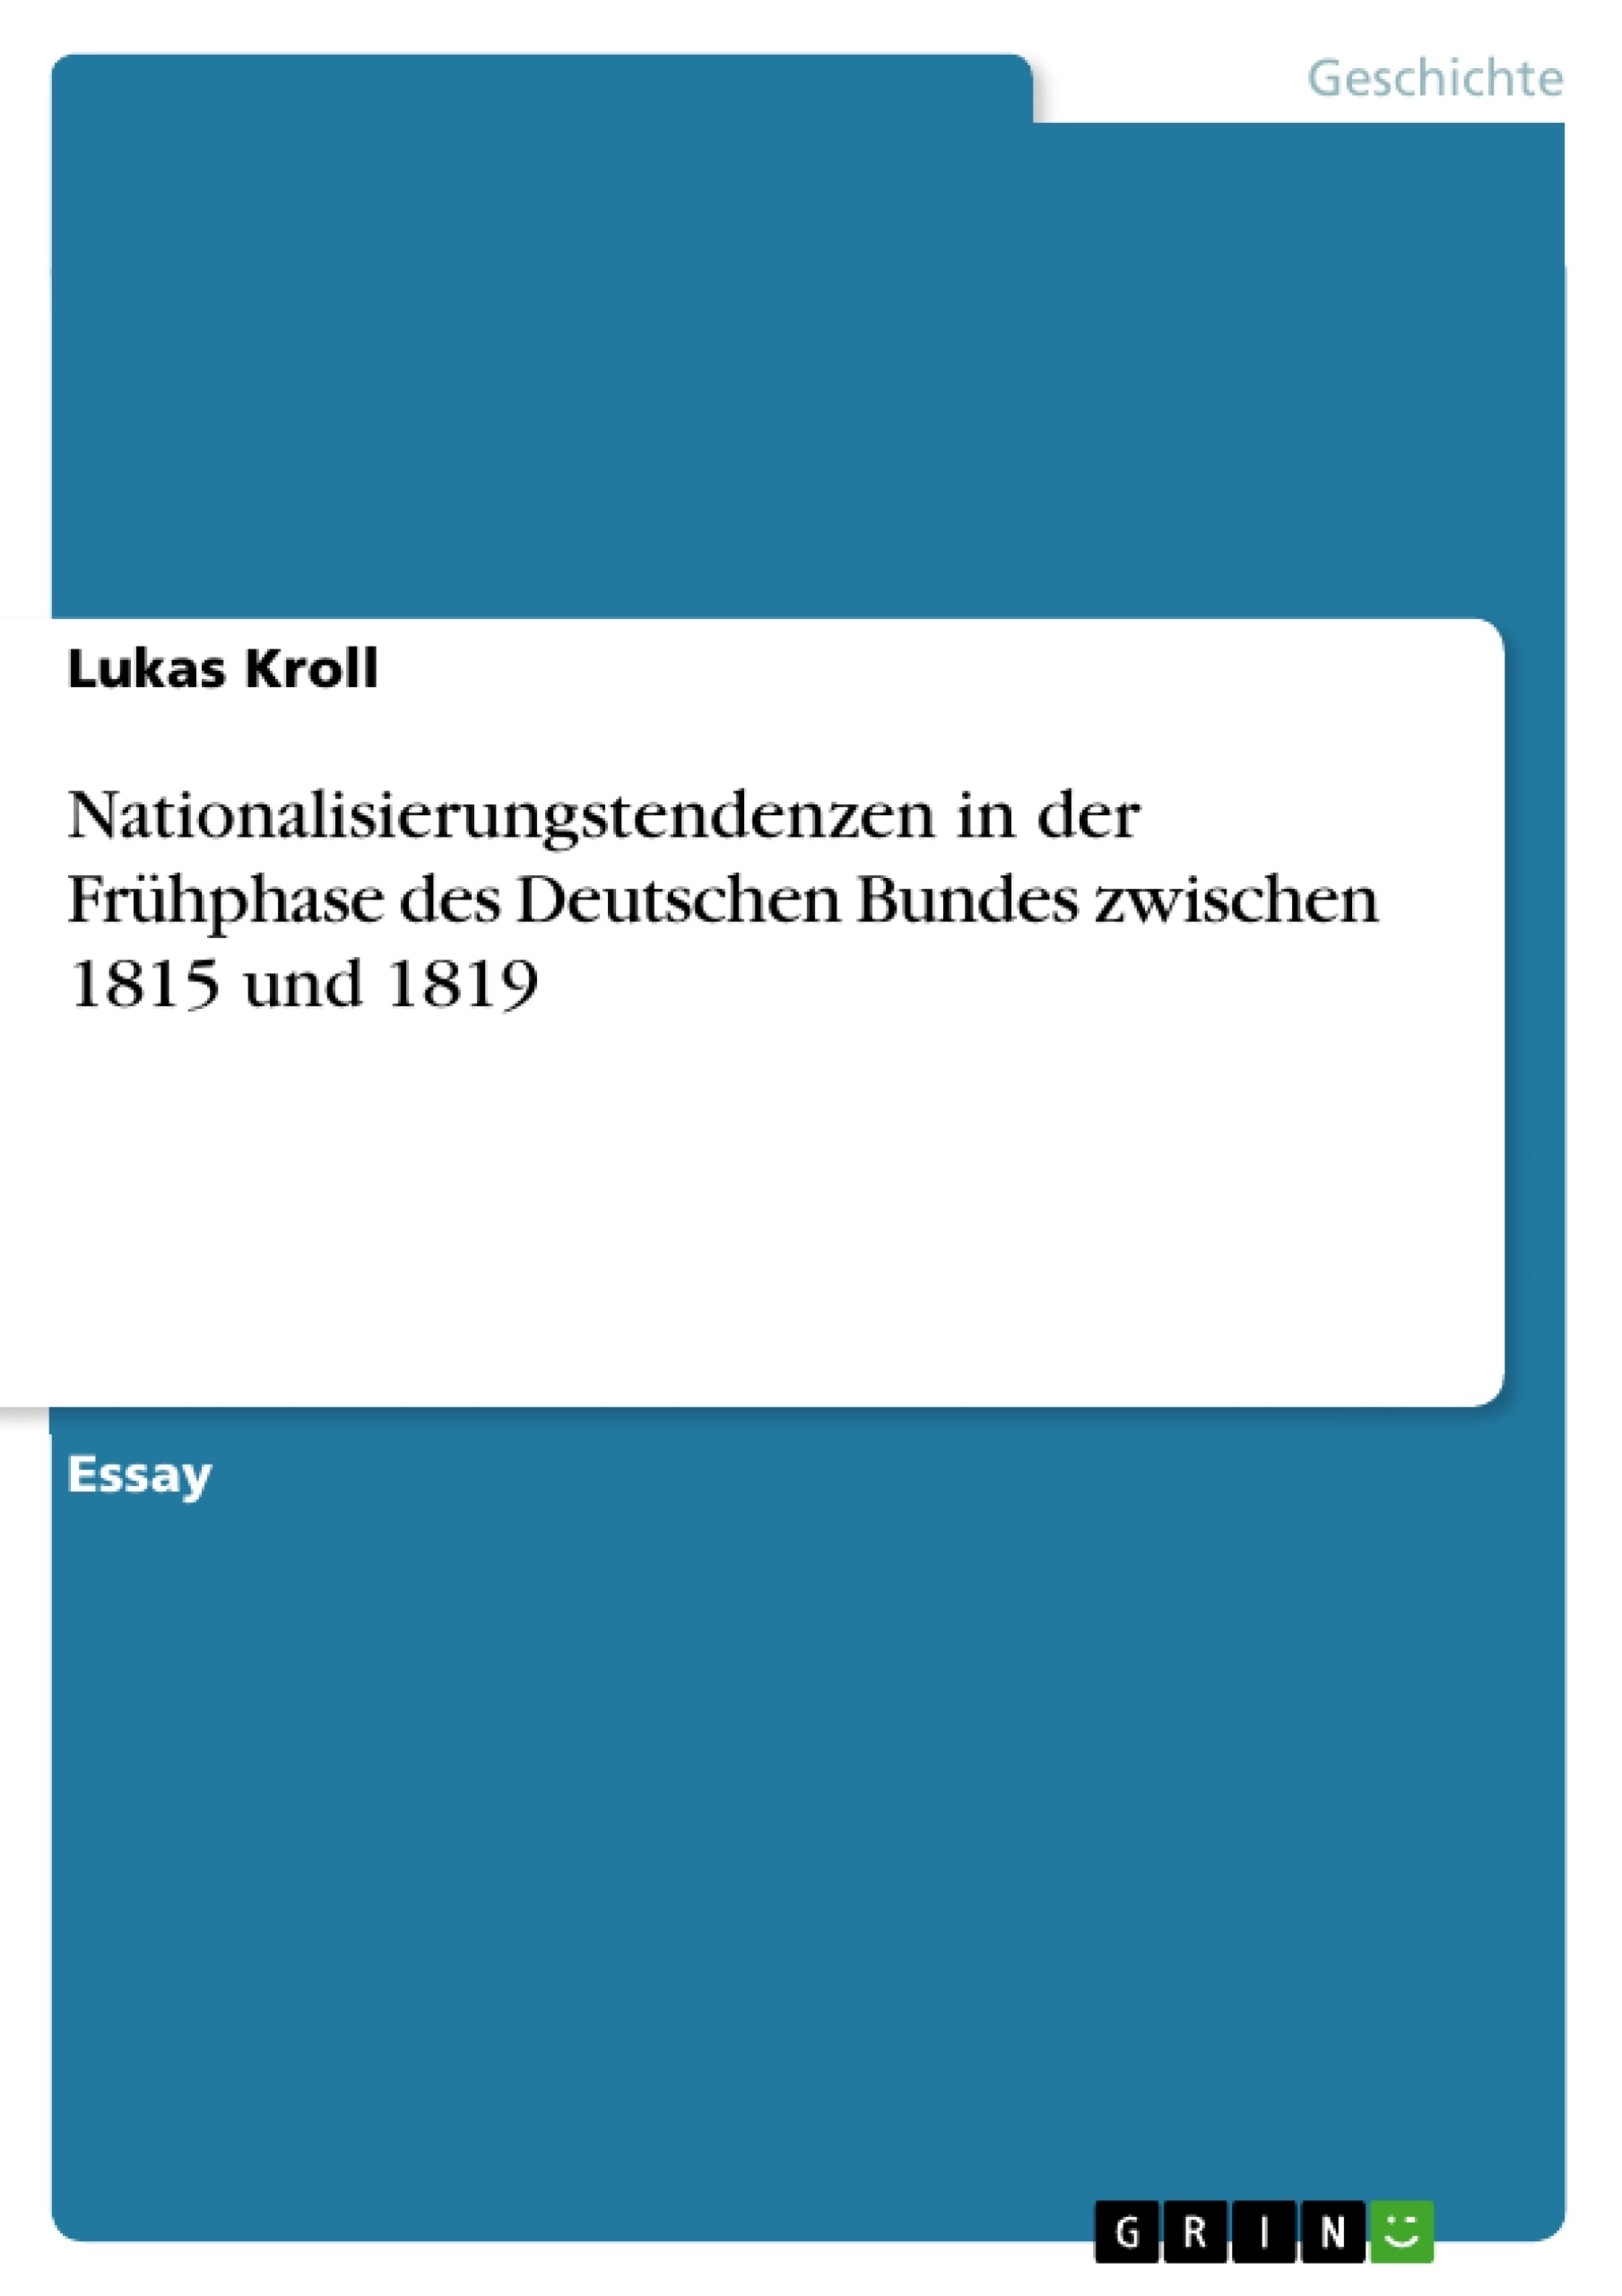 Title: Nationalisierungstendenzen  in der Frühphase  des Deutschen Bundes  zwischen 1815 und 1819